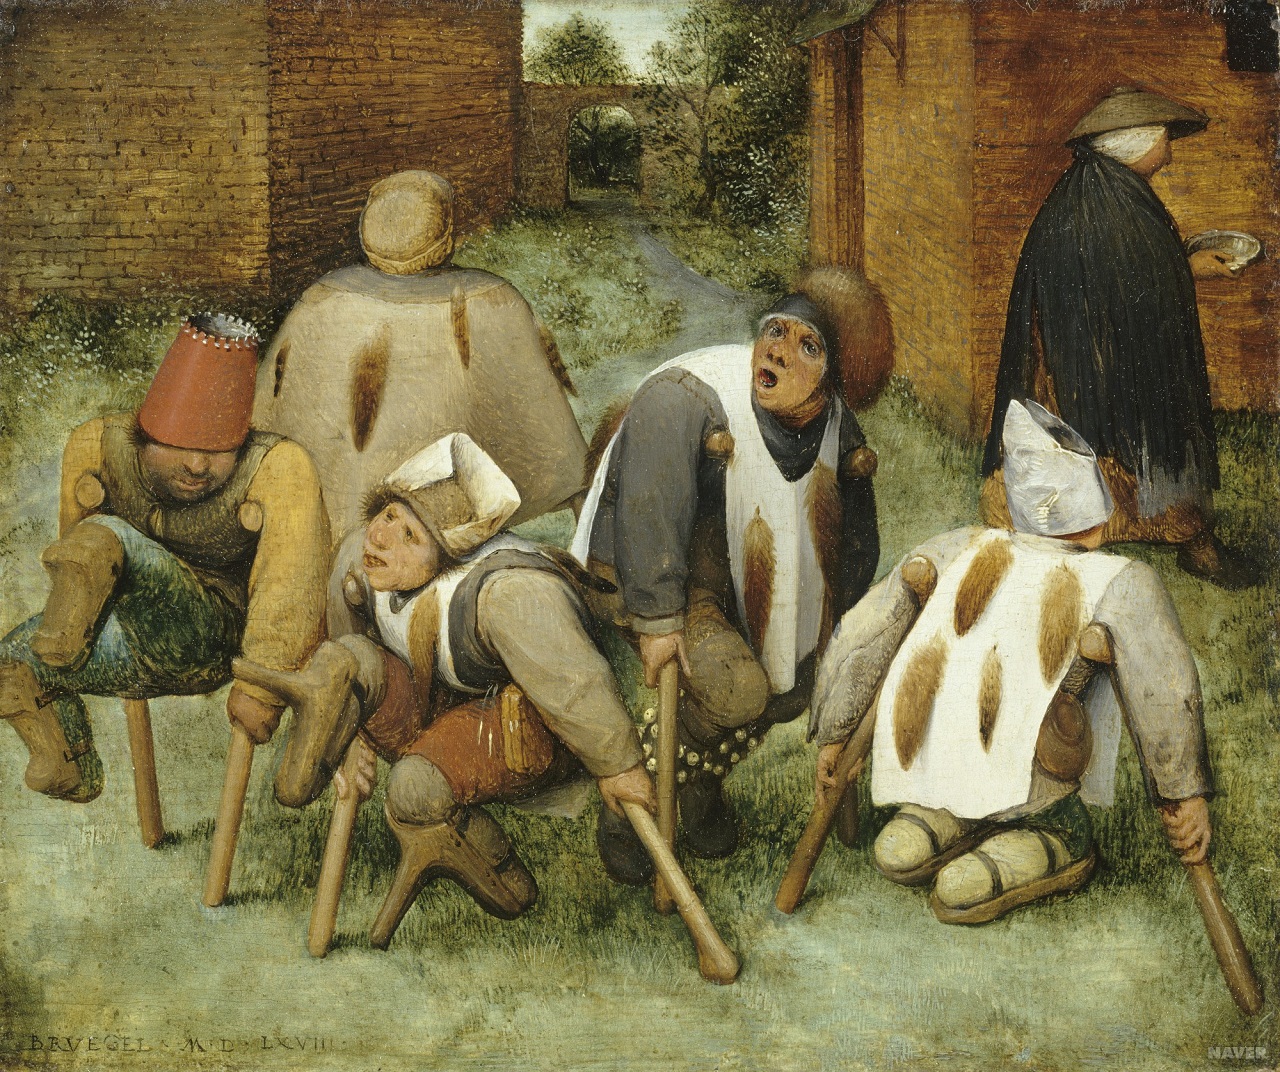 거지들 (Les Mendiants. 1568) 대 피테르 브뢰헬(Pieter Bruegel le Vieux).브뢰헬은 구걸하는 장애인들을 그림으로 남겼다. 고단한 그들의 삶이 여과없이 드러난다. 피테르 브뢰헬은  변복을 하고 남의 동네 잔칫집이나 상가에 끼어들어 눈에 잘 띄지 않는 구석자리를 차지하고 앉아서 몇 시간이고 사람들의 꾸밈없는 모습을 살펴보았다고 한다.